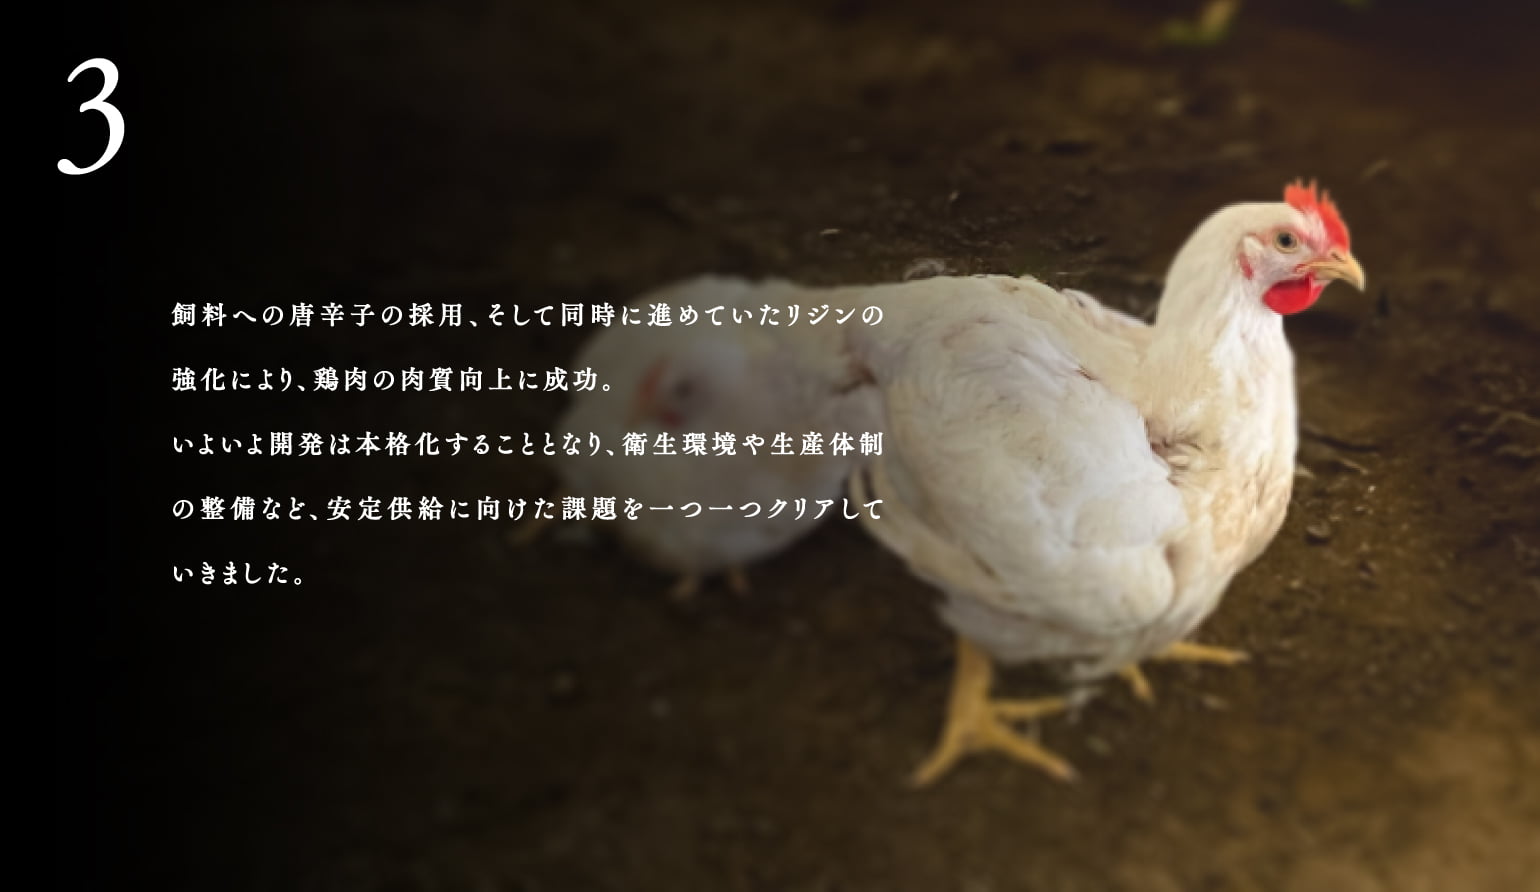 3.飼料への唐⾟⼦の採⽤、そして同時に進めていたリジンの強化により、鶏⾁の⾁質向上に成功。いよいよ開発は本格化することとなり、衛⽣環境や⽣産体制の整備など、安定供給に向けた課題を⼀つ⼀つクリアしていきました。